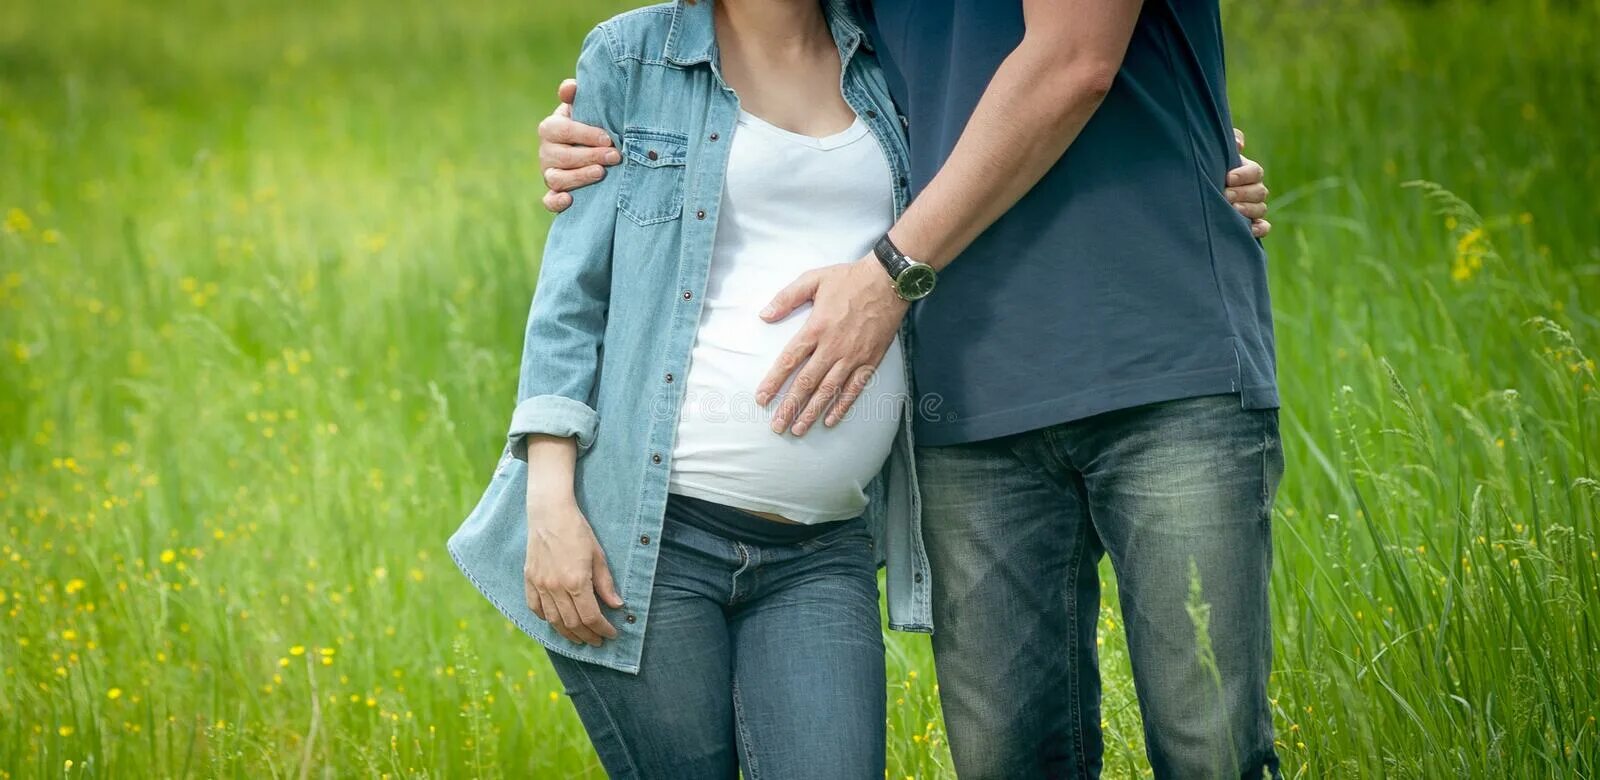 Беременную маму папу. Семья с беременной женщиной. Мужчина обнимает беременную женщину. Пожилая женщина обнимает беременную дочь обои.